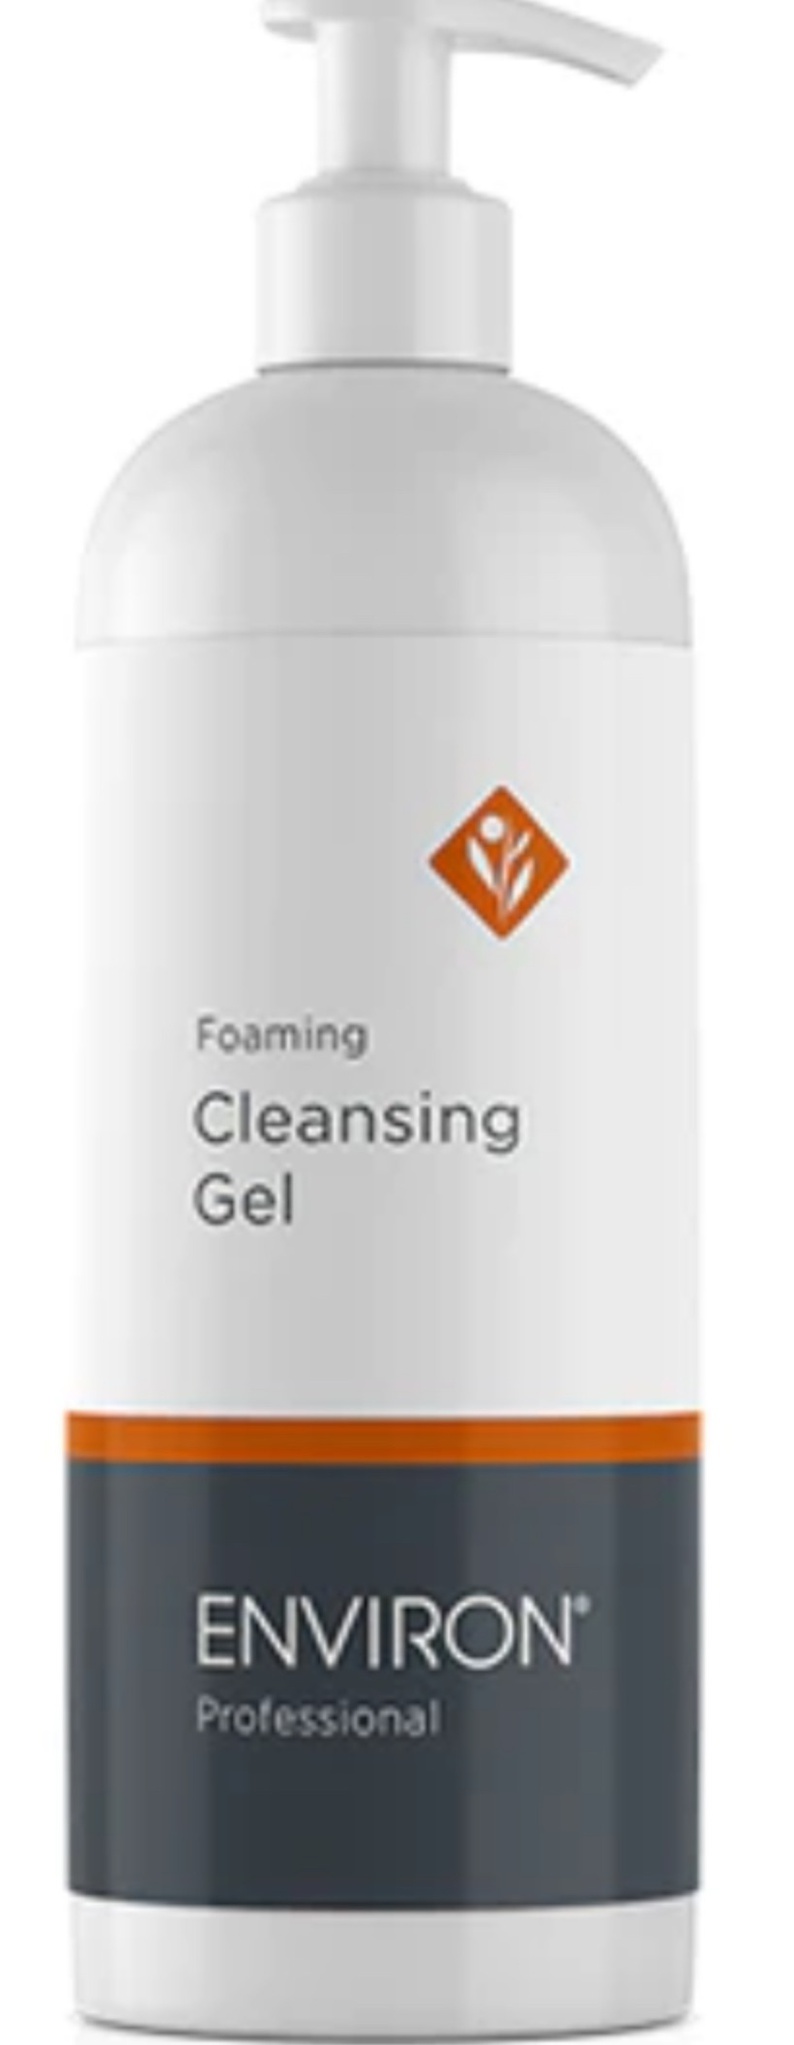 Environ Foaming Cleansing Gel